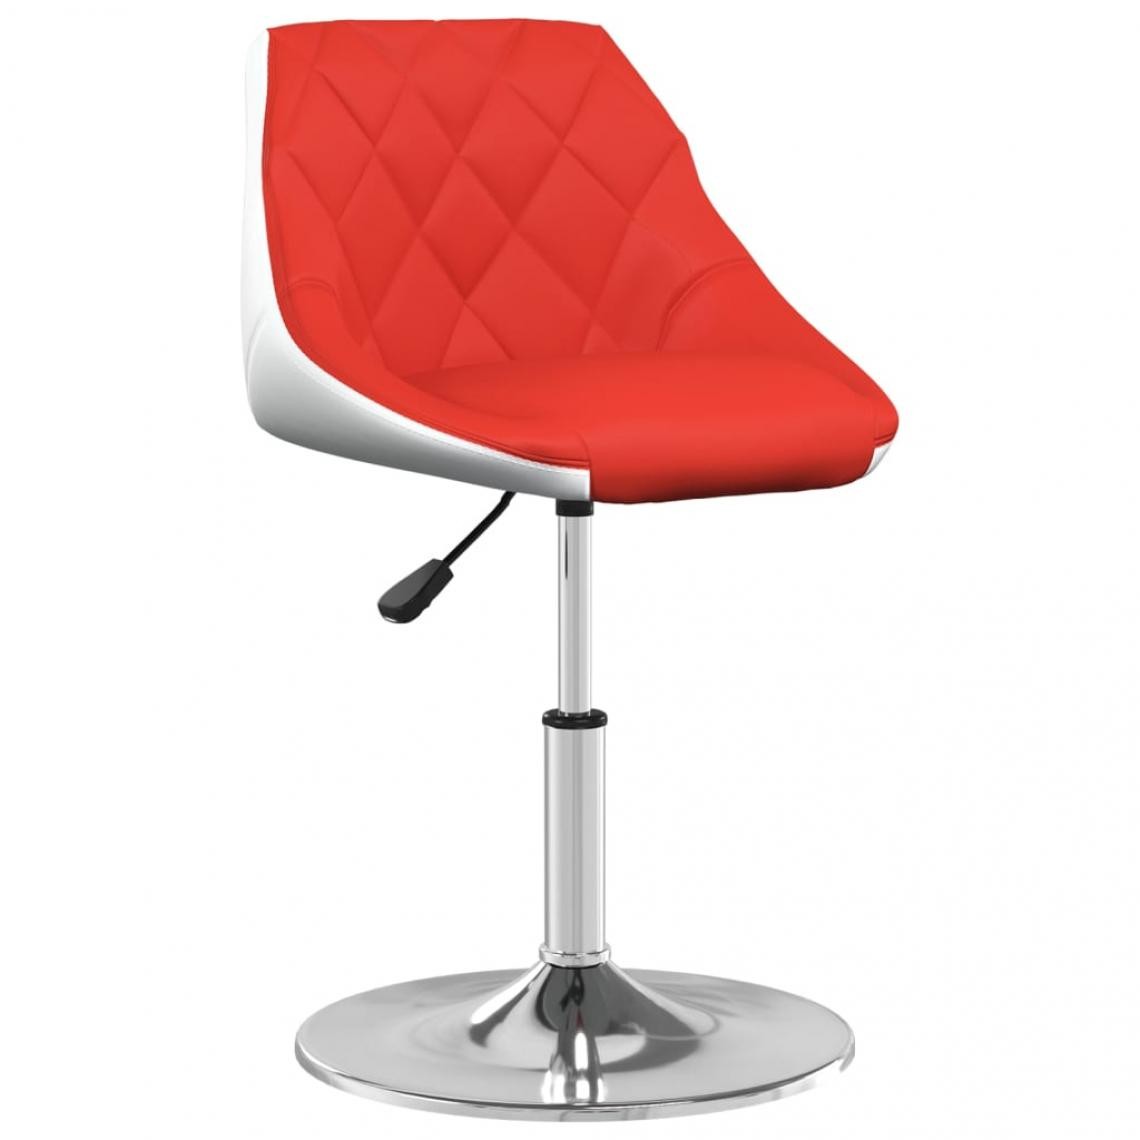 Vidaxl - vidaXL Chaise de salle à manger Rouge et blanc Similicuir - Chaises